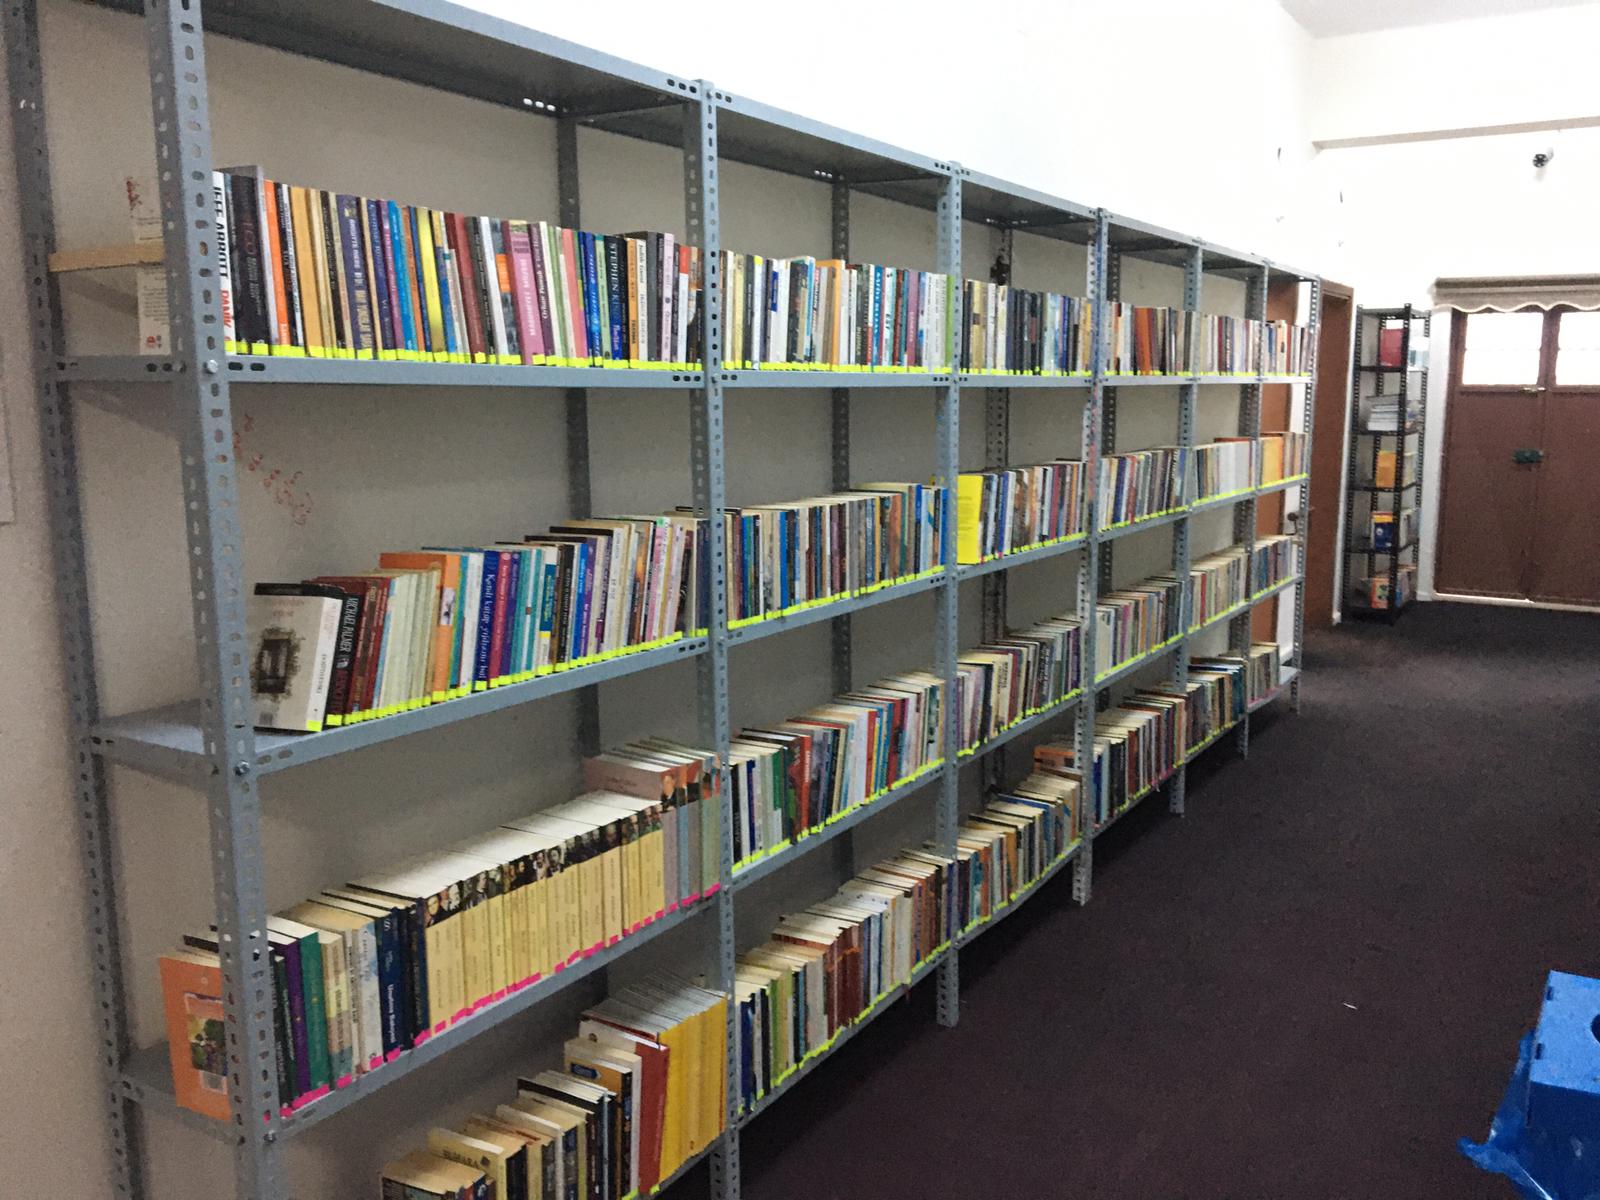 Karataş Belediyesi Koridorları Kütüphane Oldu 